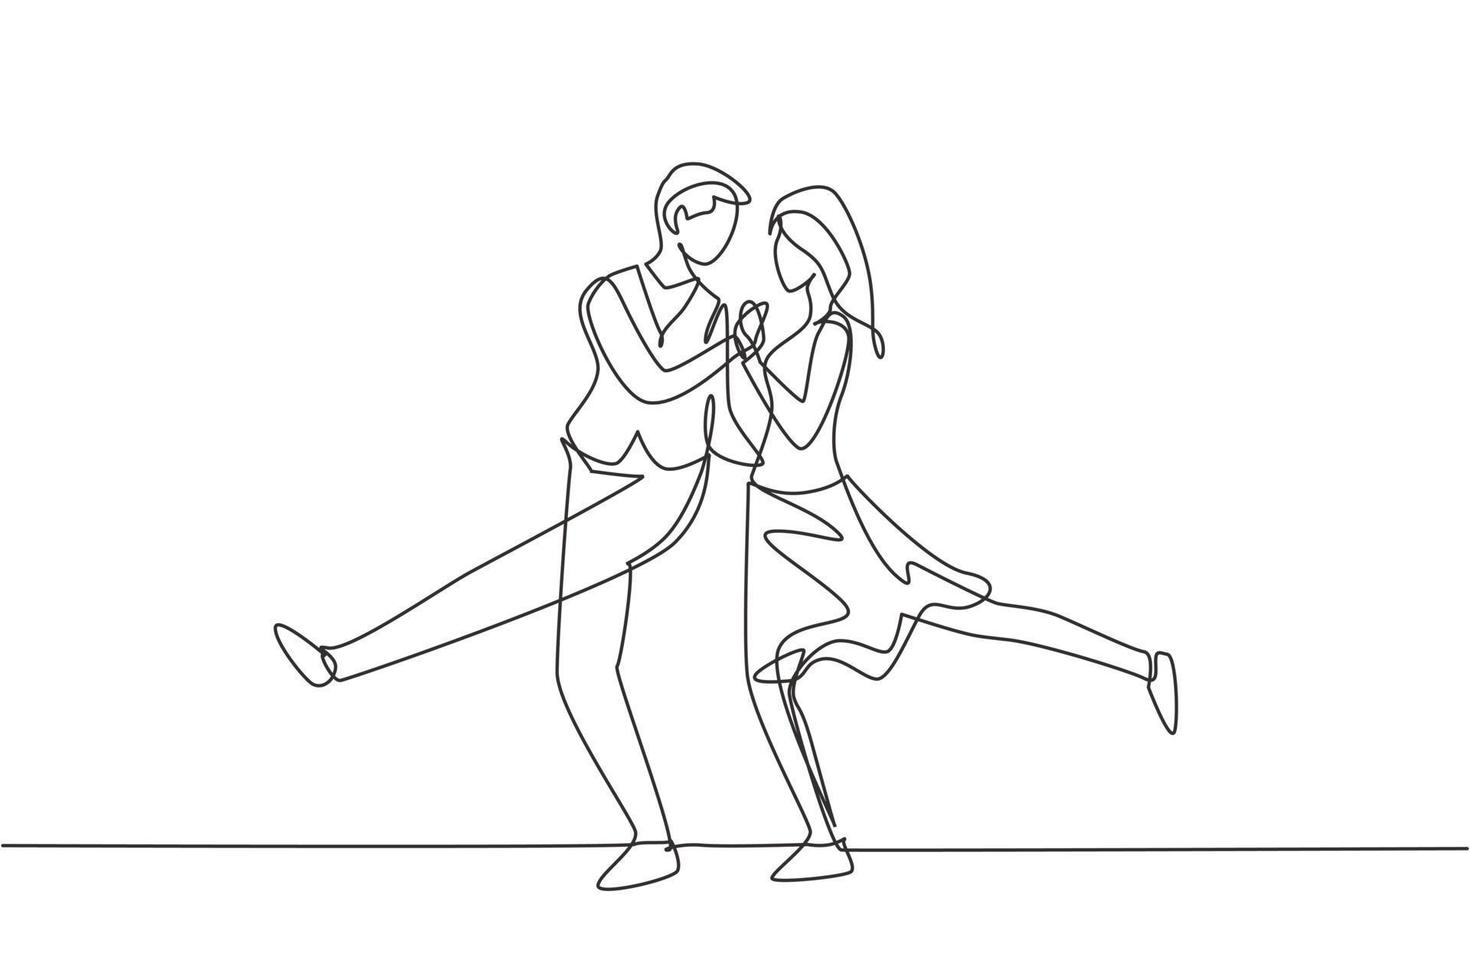 einzelne durchgehende Strichzeichnung Mann und Frau professionelle Tänzer Paar tanzen Tango, Walzer Tänze auf Tanzwettbewerb. romantisches Nachtkonzept. dynamische eine linie zeichnen grafikdesign vektorillustration vektor